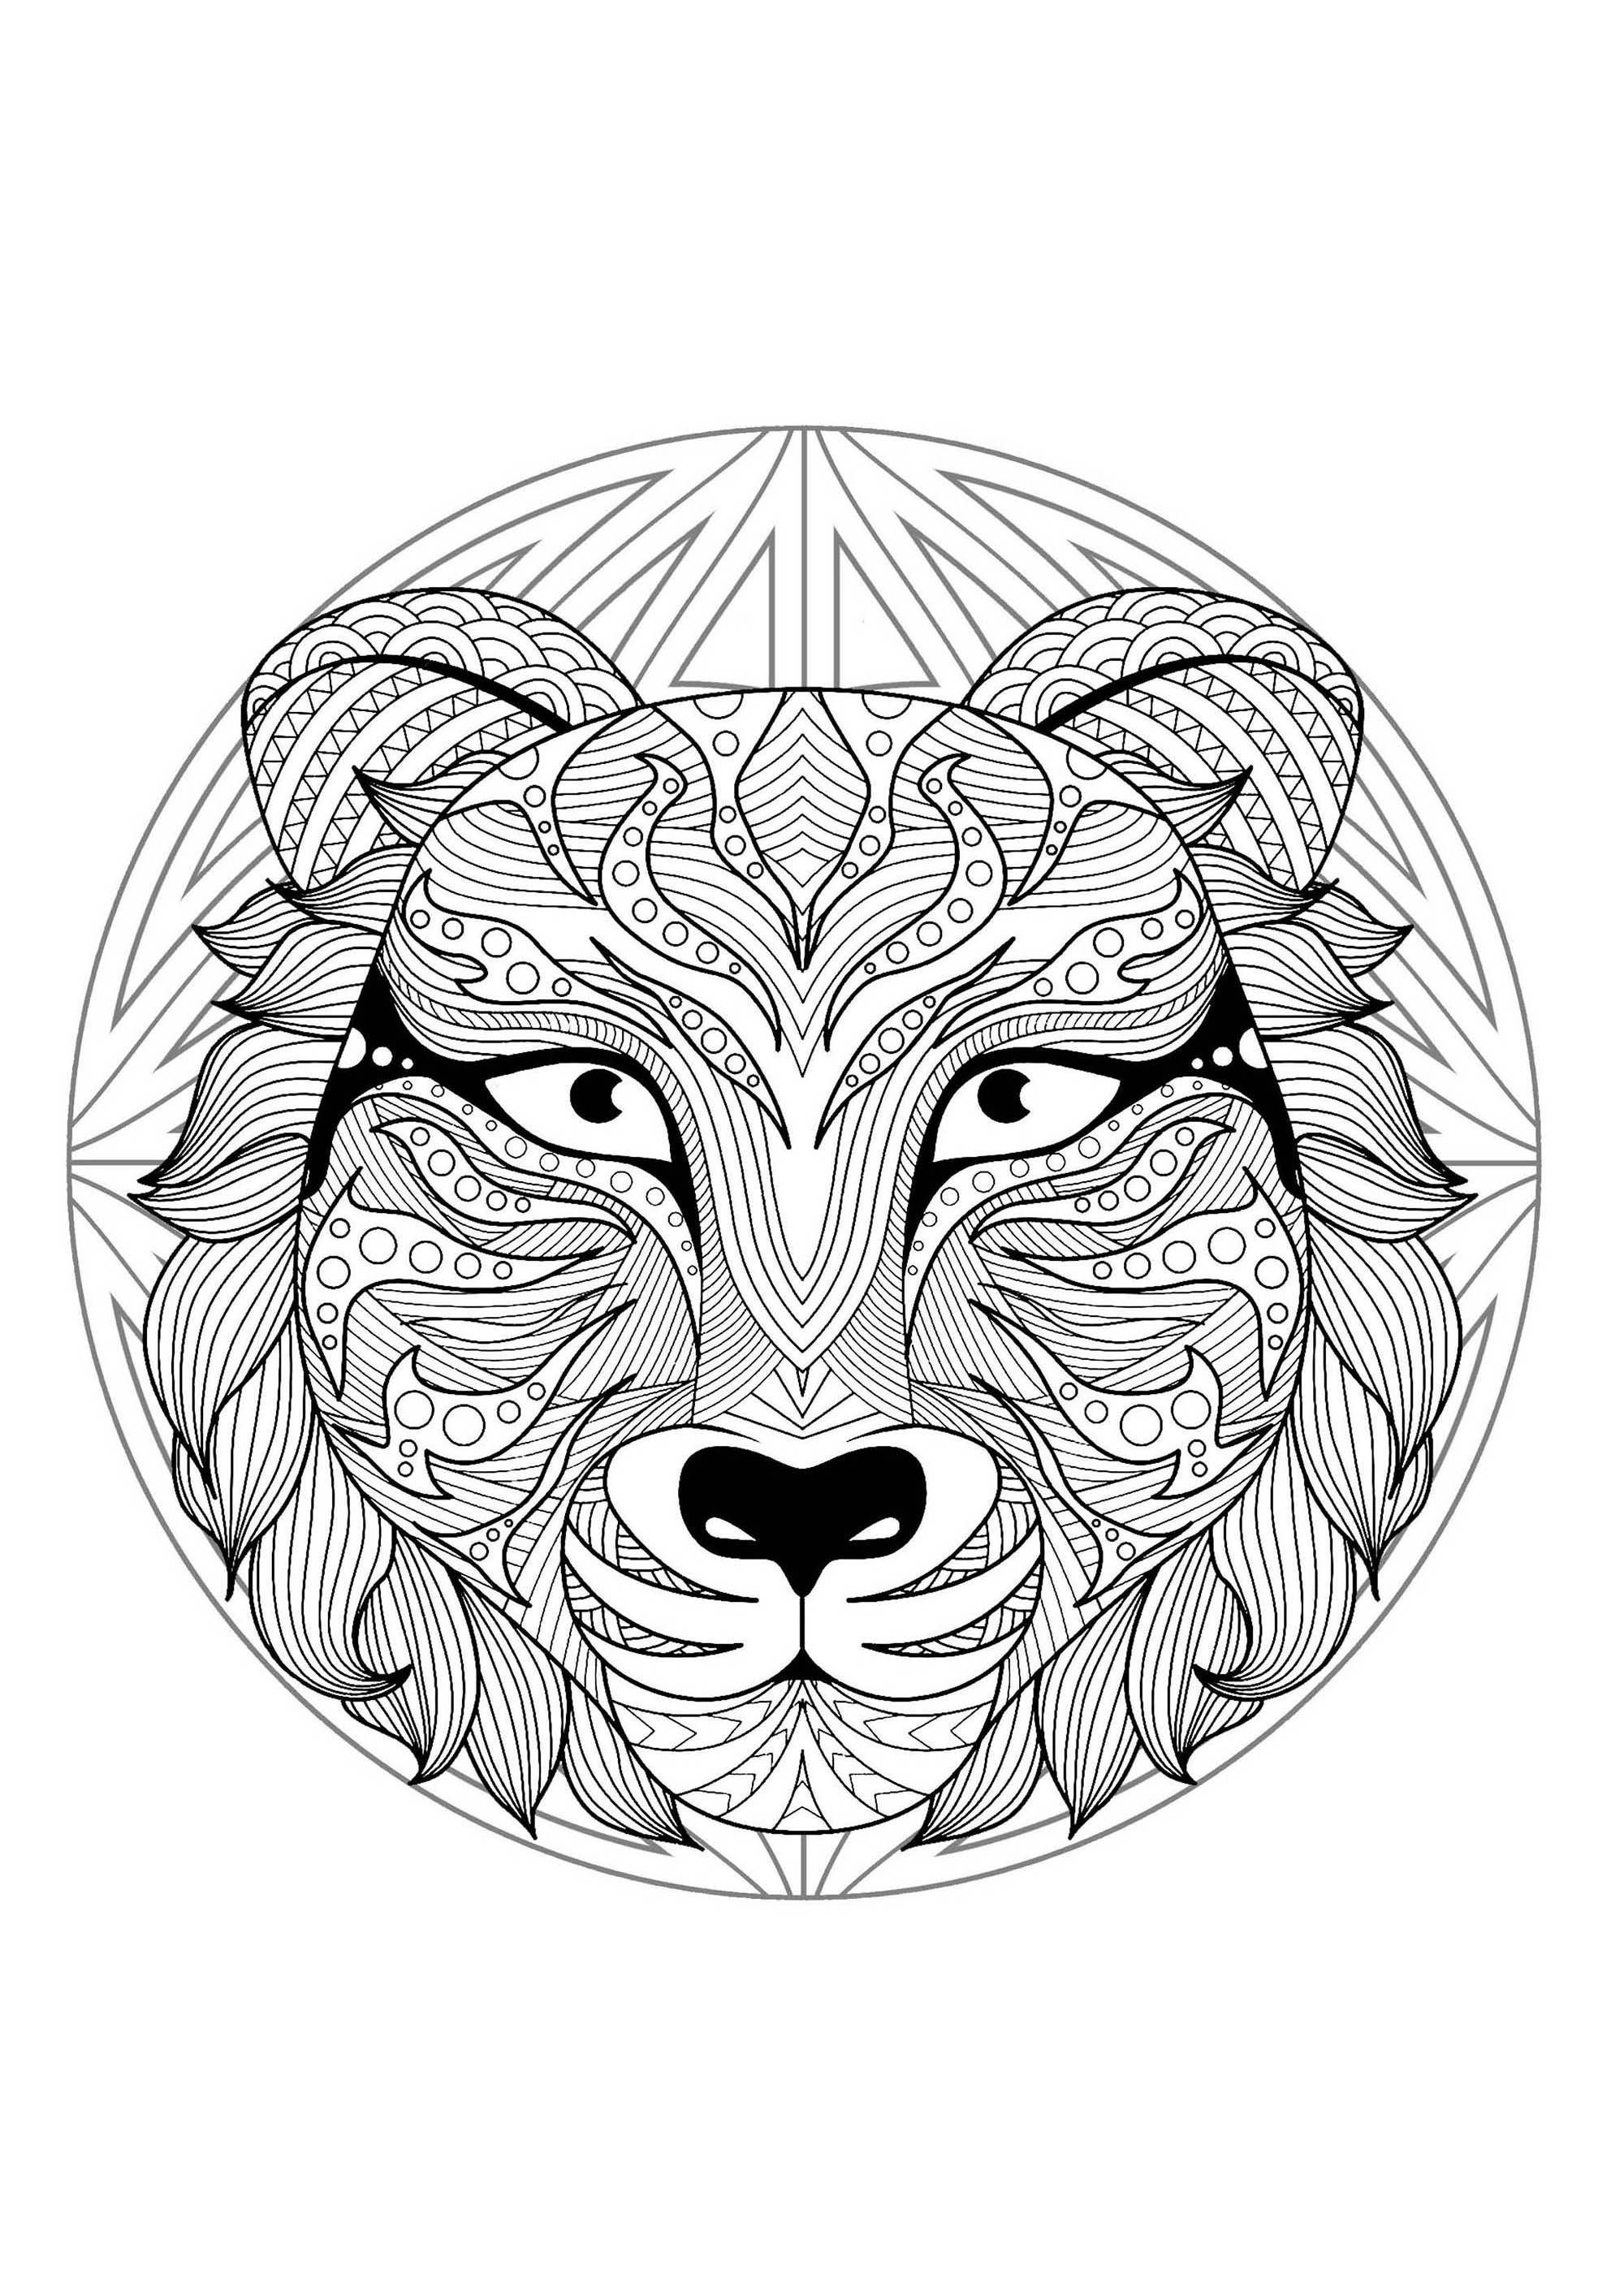 Mandala with beautiful Wolf head and geometric patterns - M&alas Adult